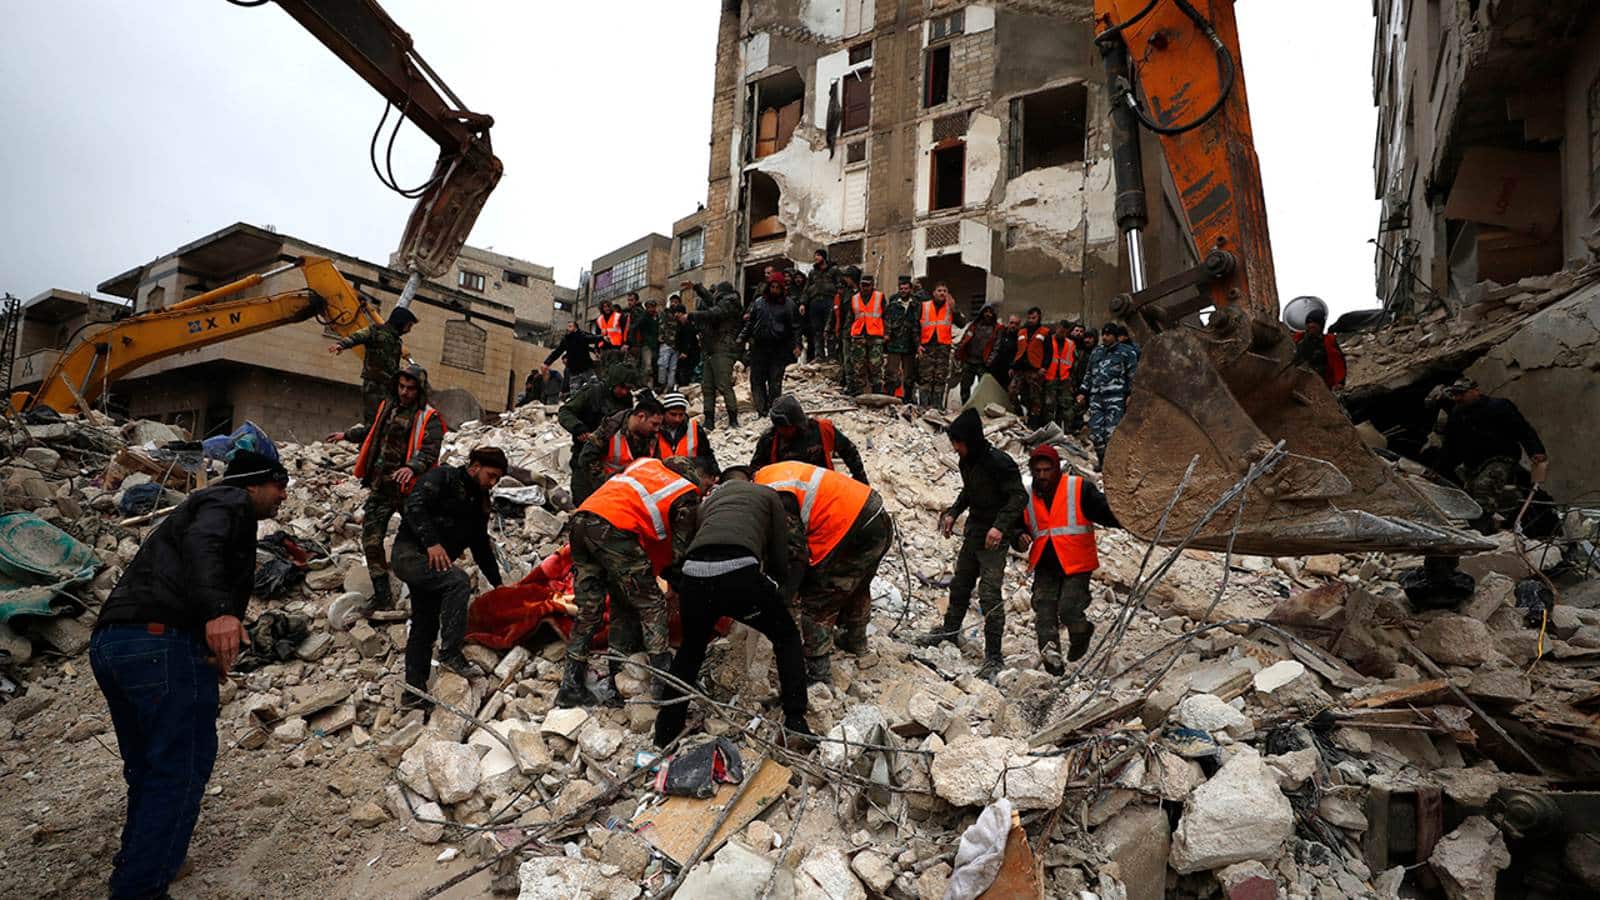 Christian Atsu found dead days following Turkey earthquake